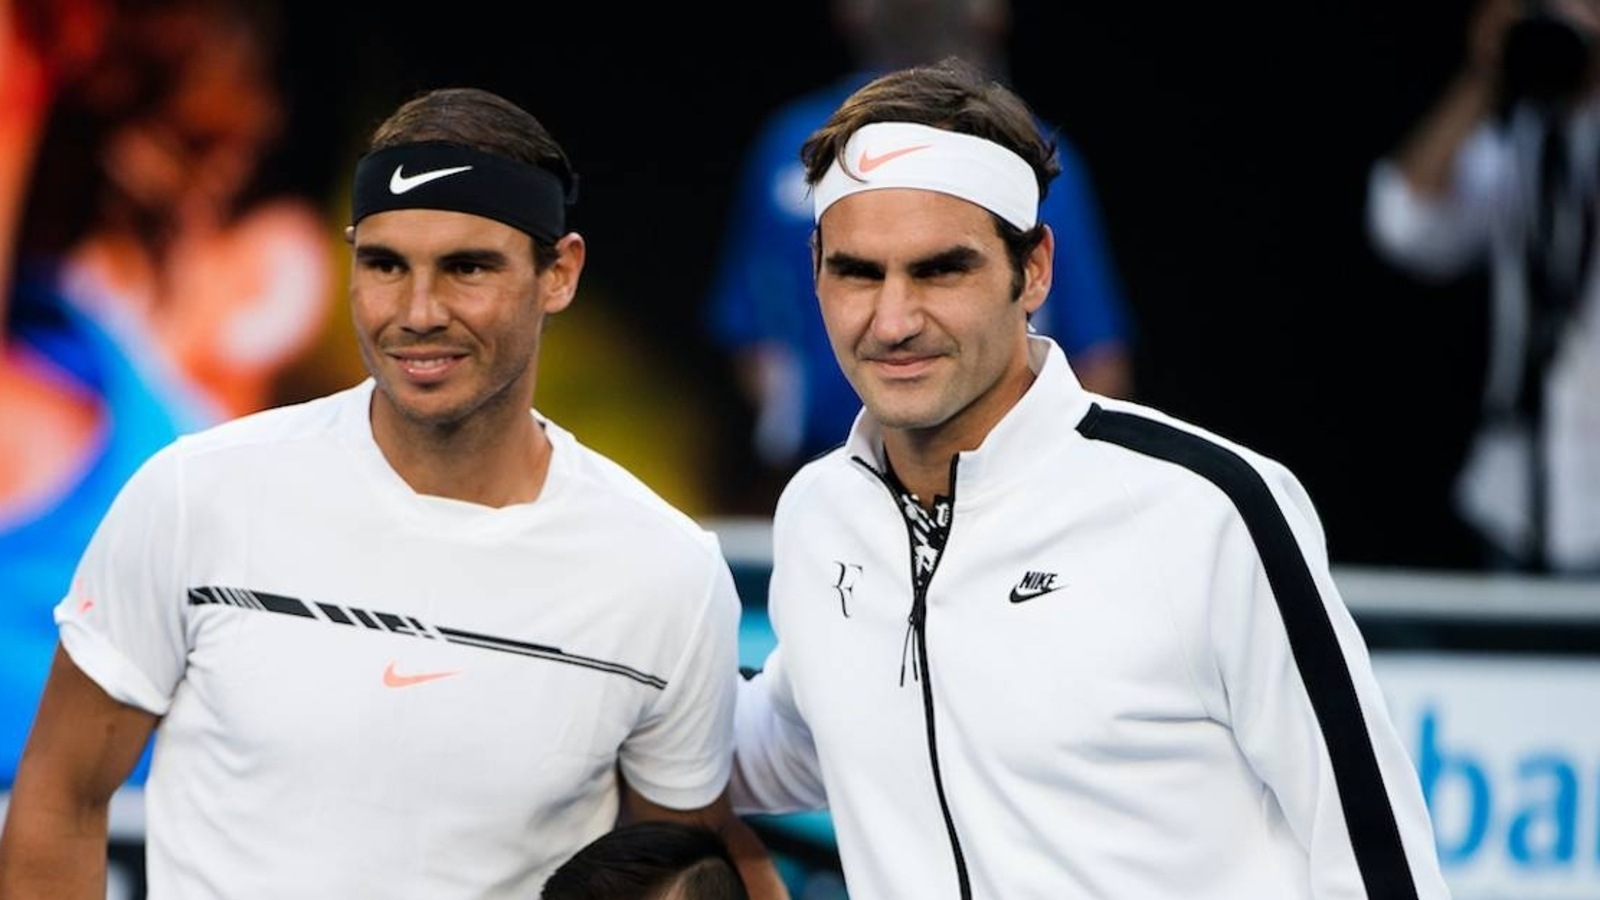 Roger Federer s’ouvre enfin sur Nadal qui élargit son histoire à Roland-Garros |  l’actualité du tennis